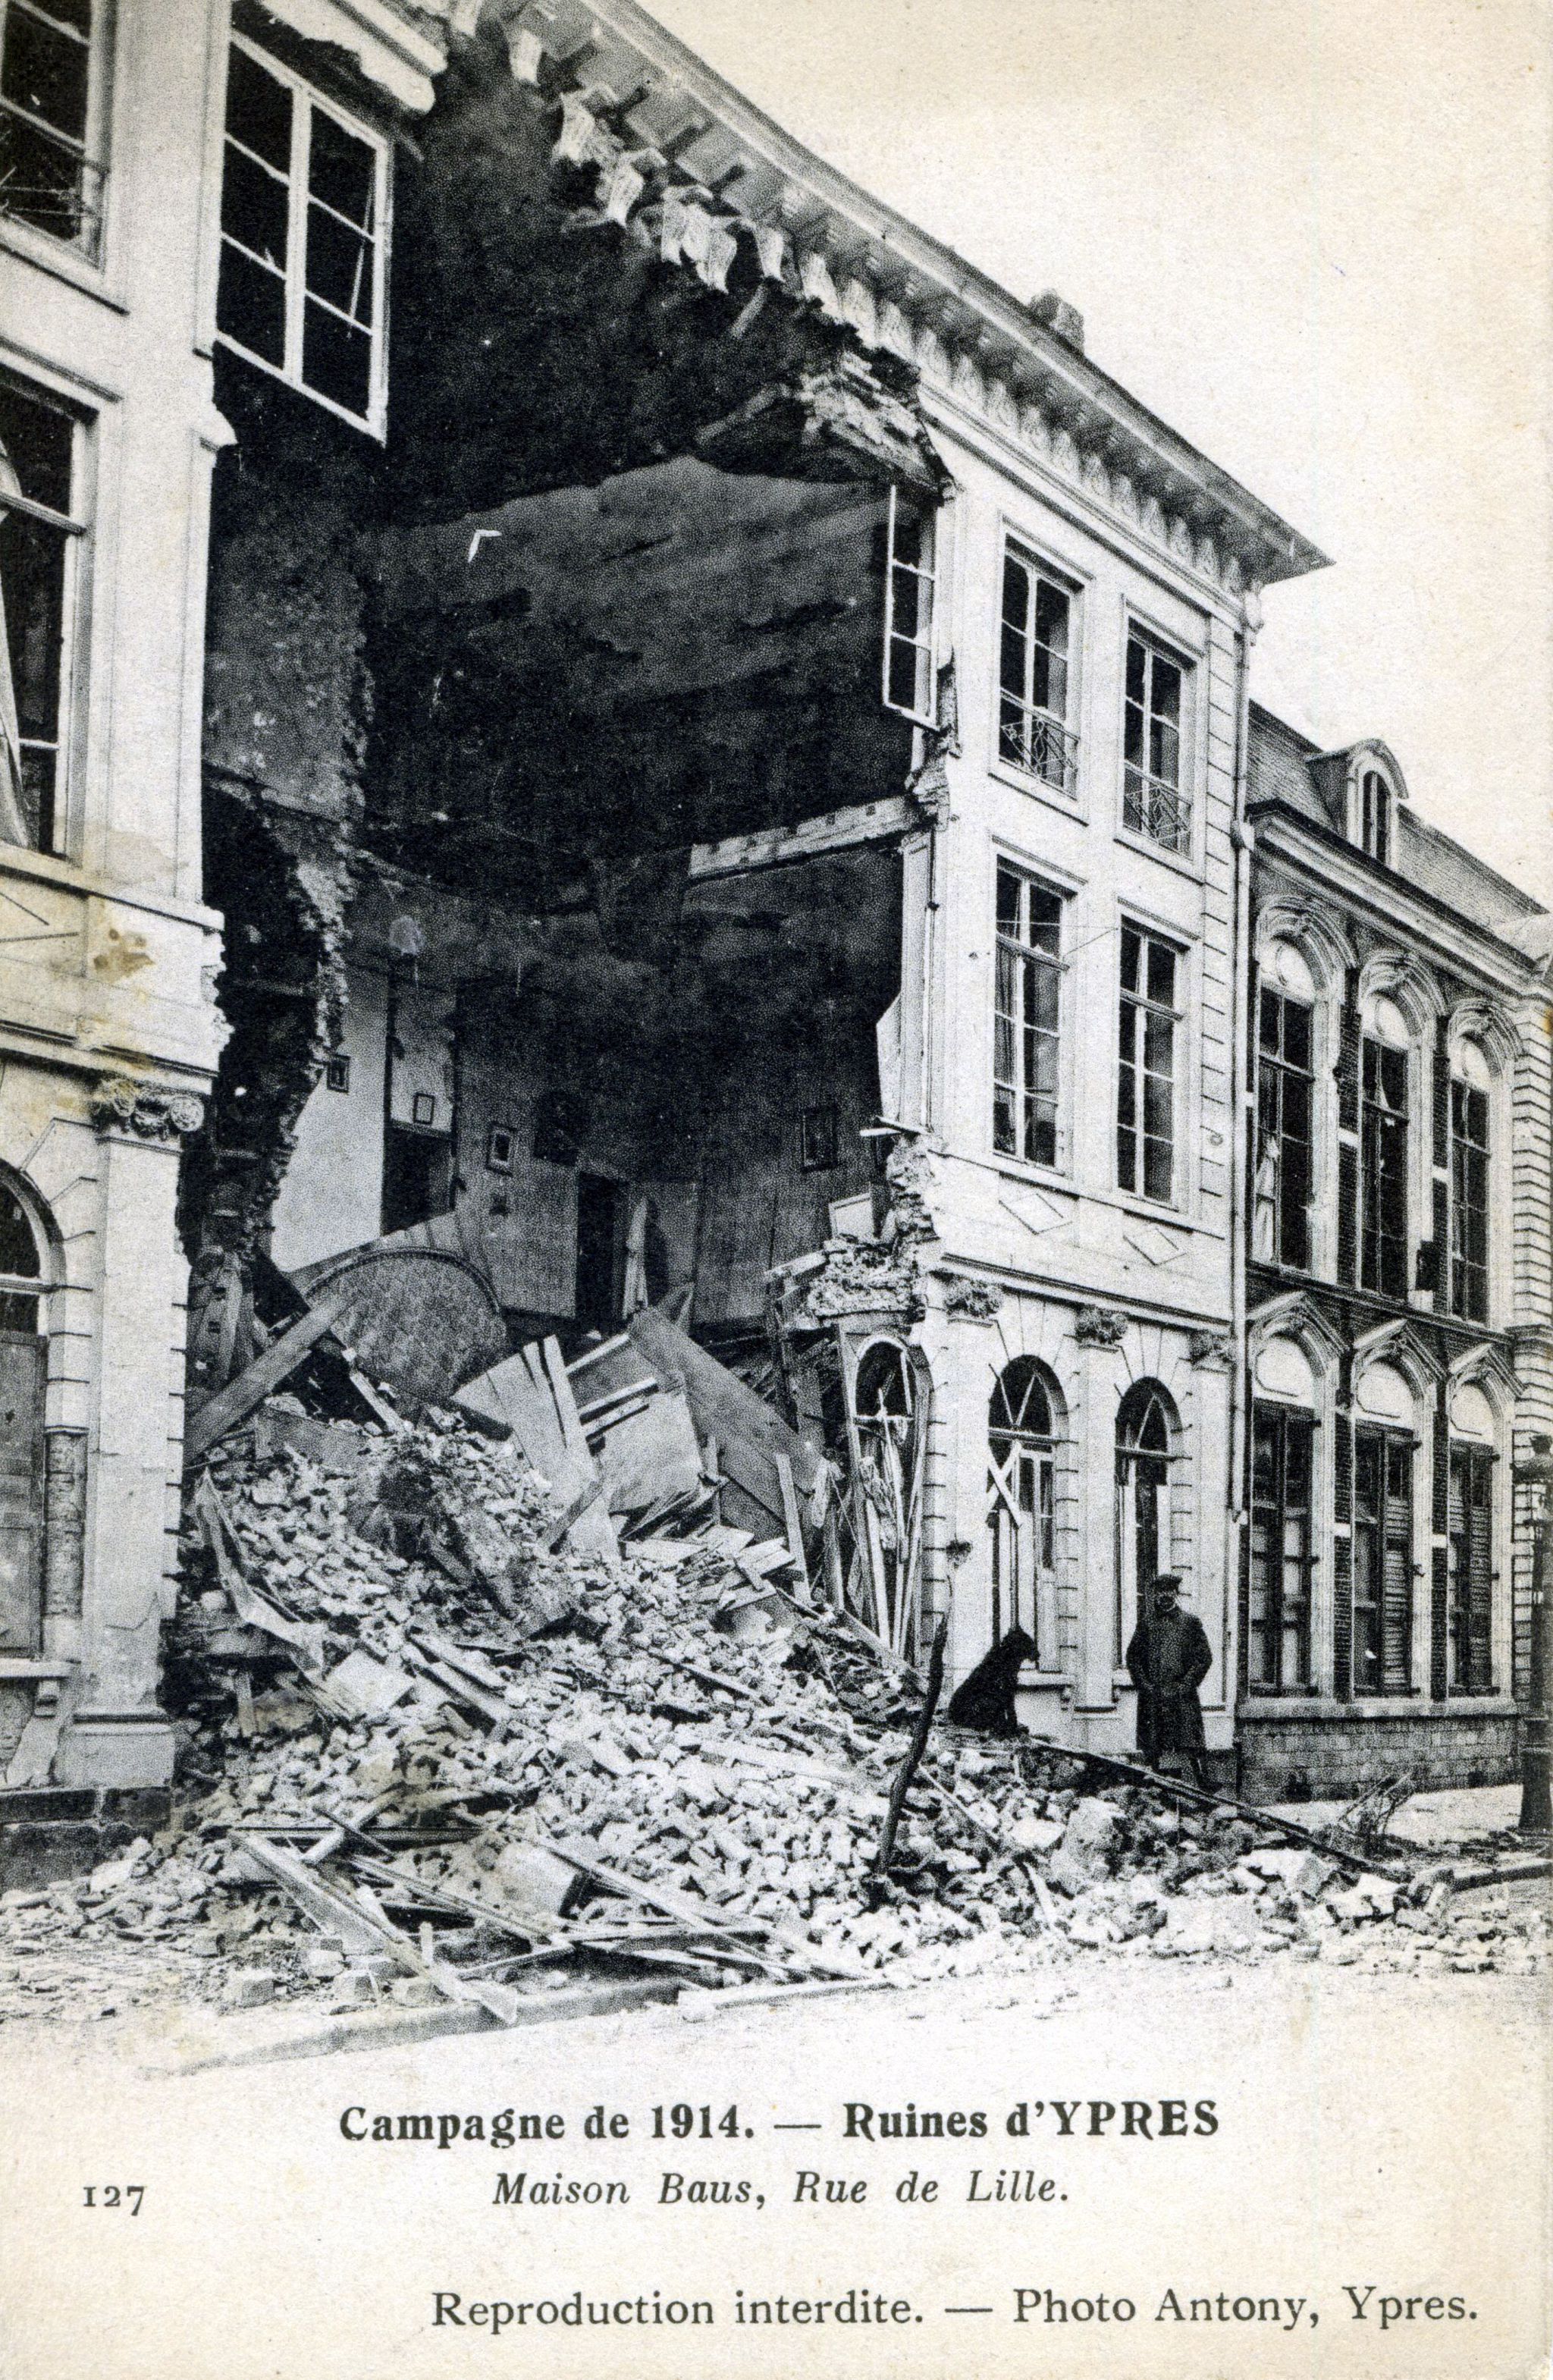 Campagne de 1914, ruines d'Ypres, Maison Baus